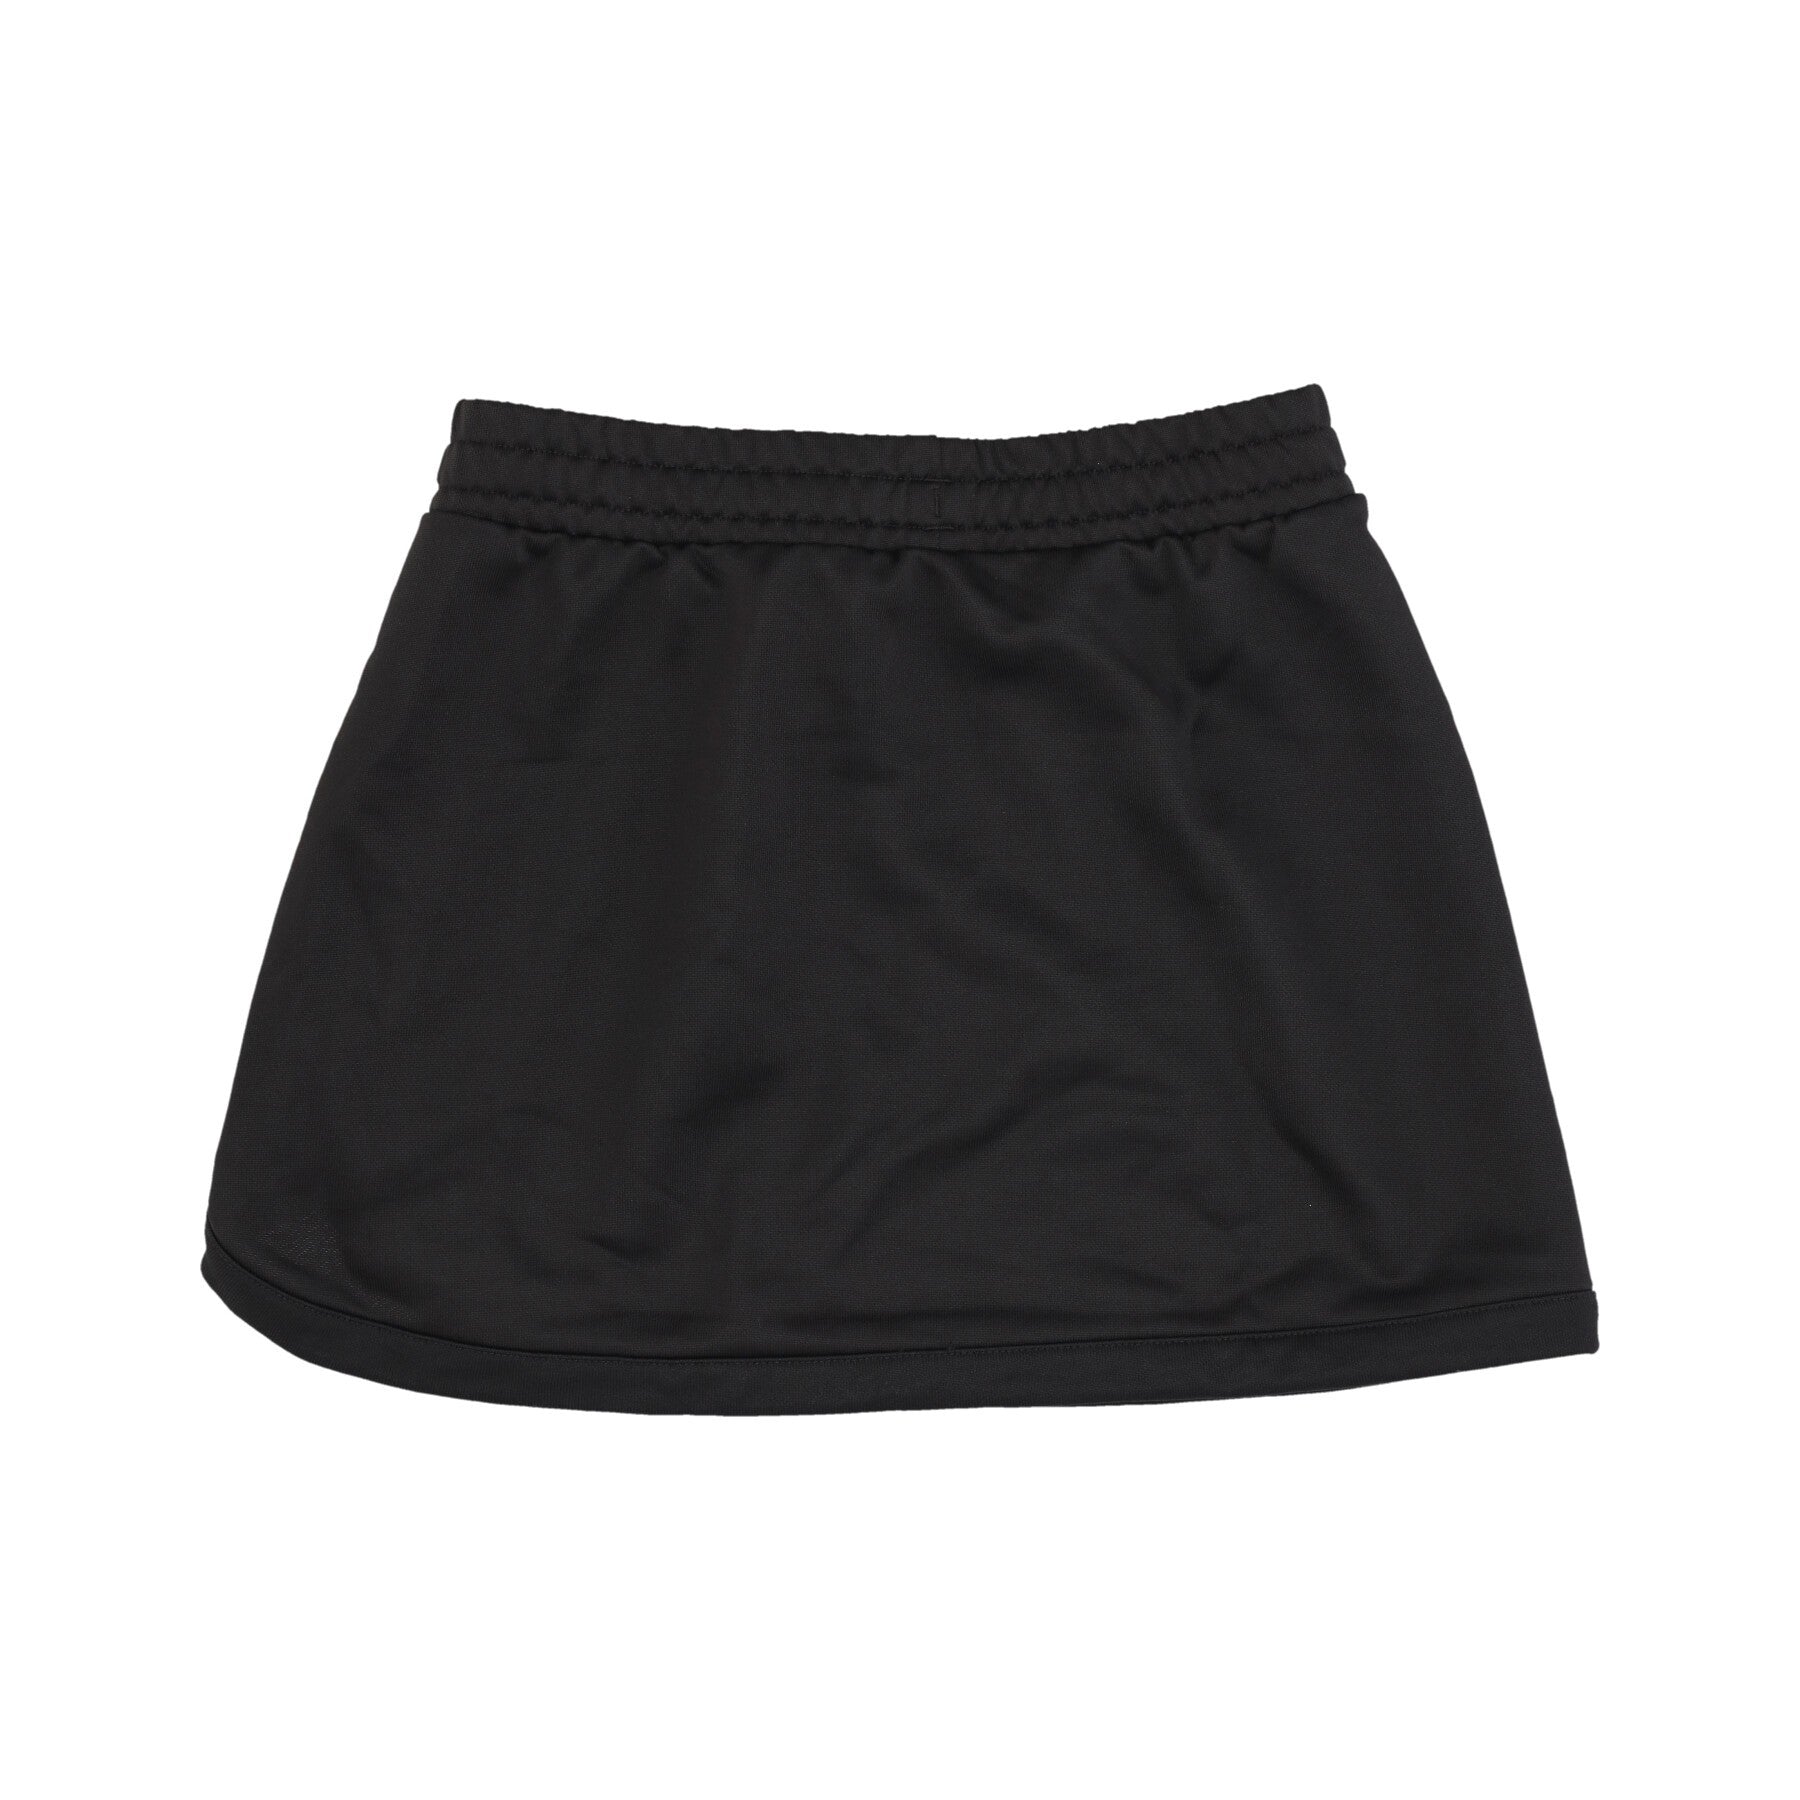 Classics A-line Skirt Women's Short Skirt